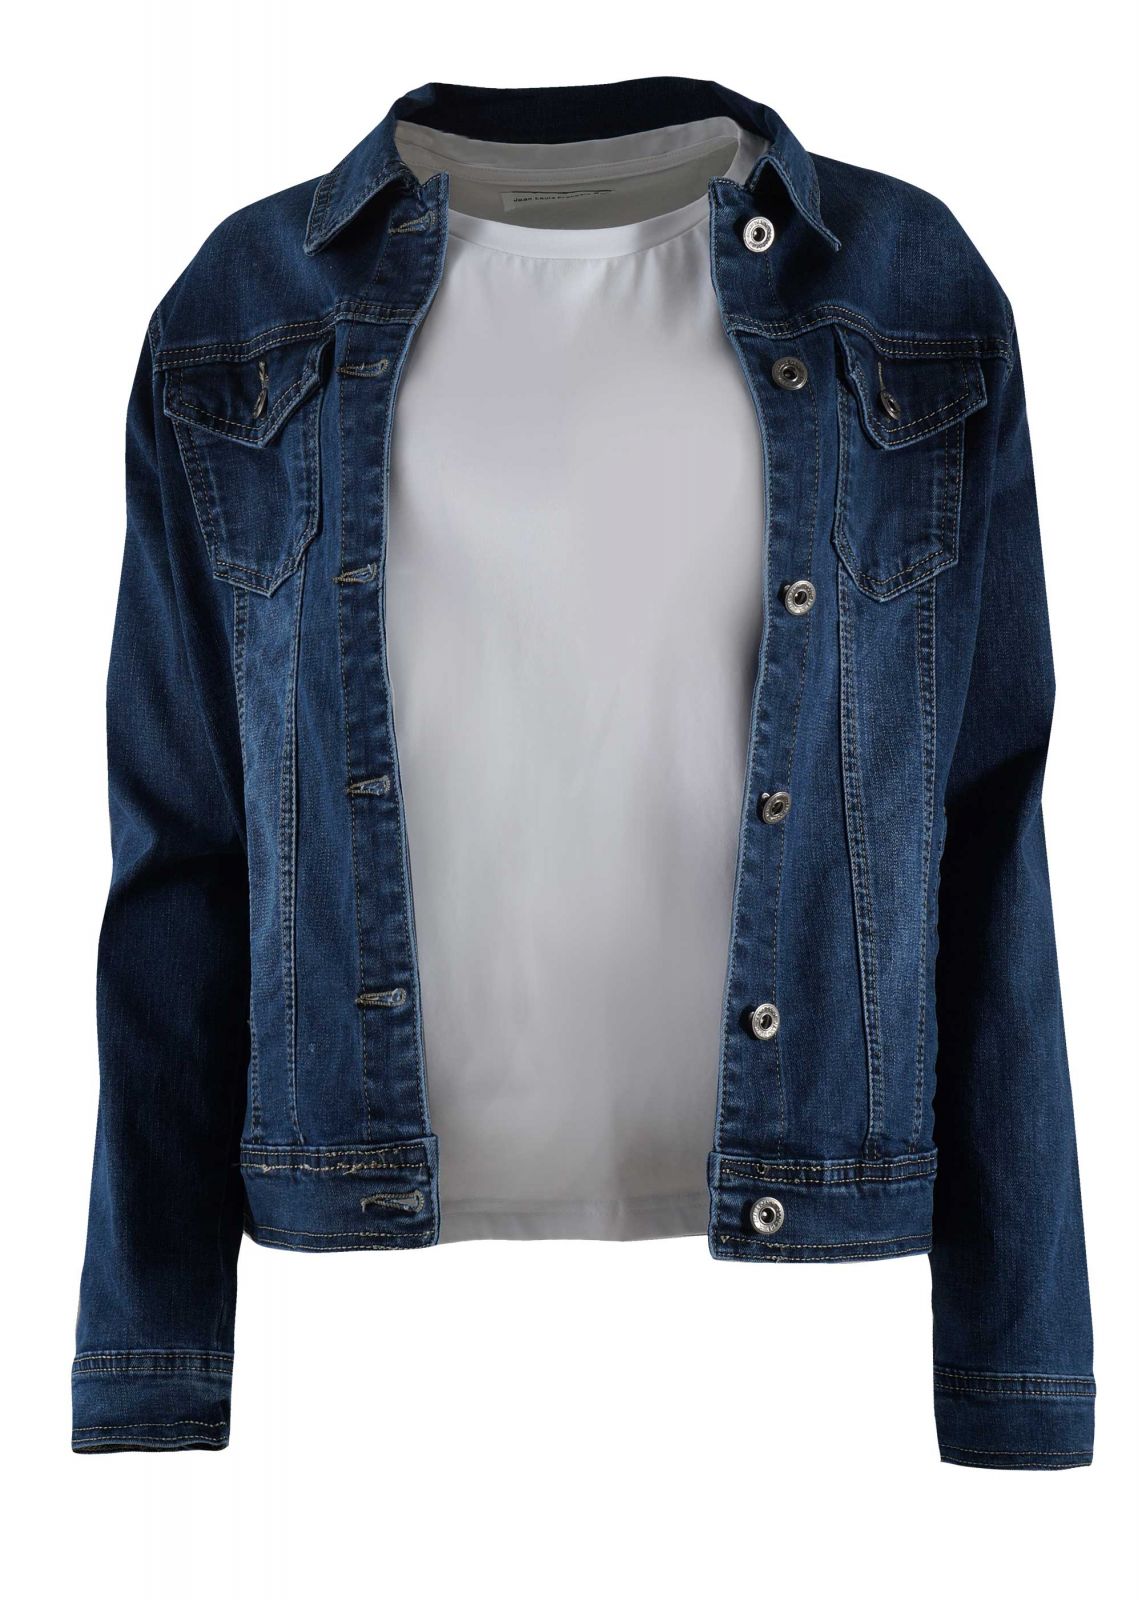 Γυναικείο jacket jean. Denim collection